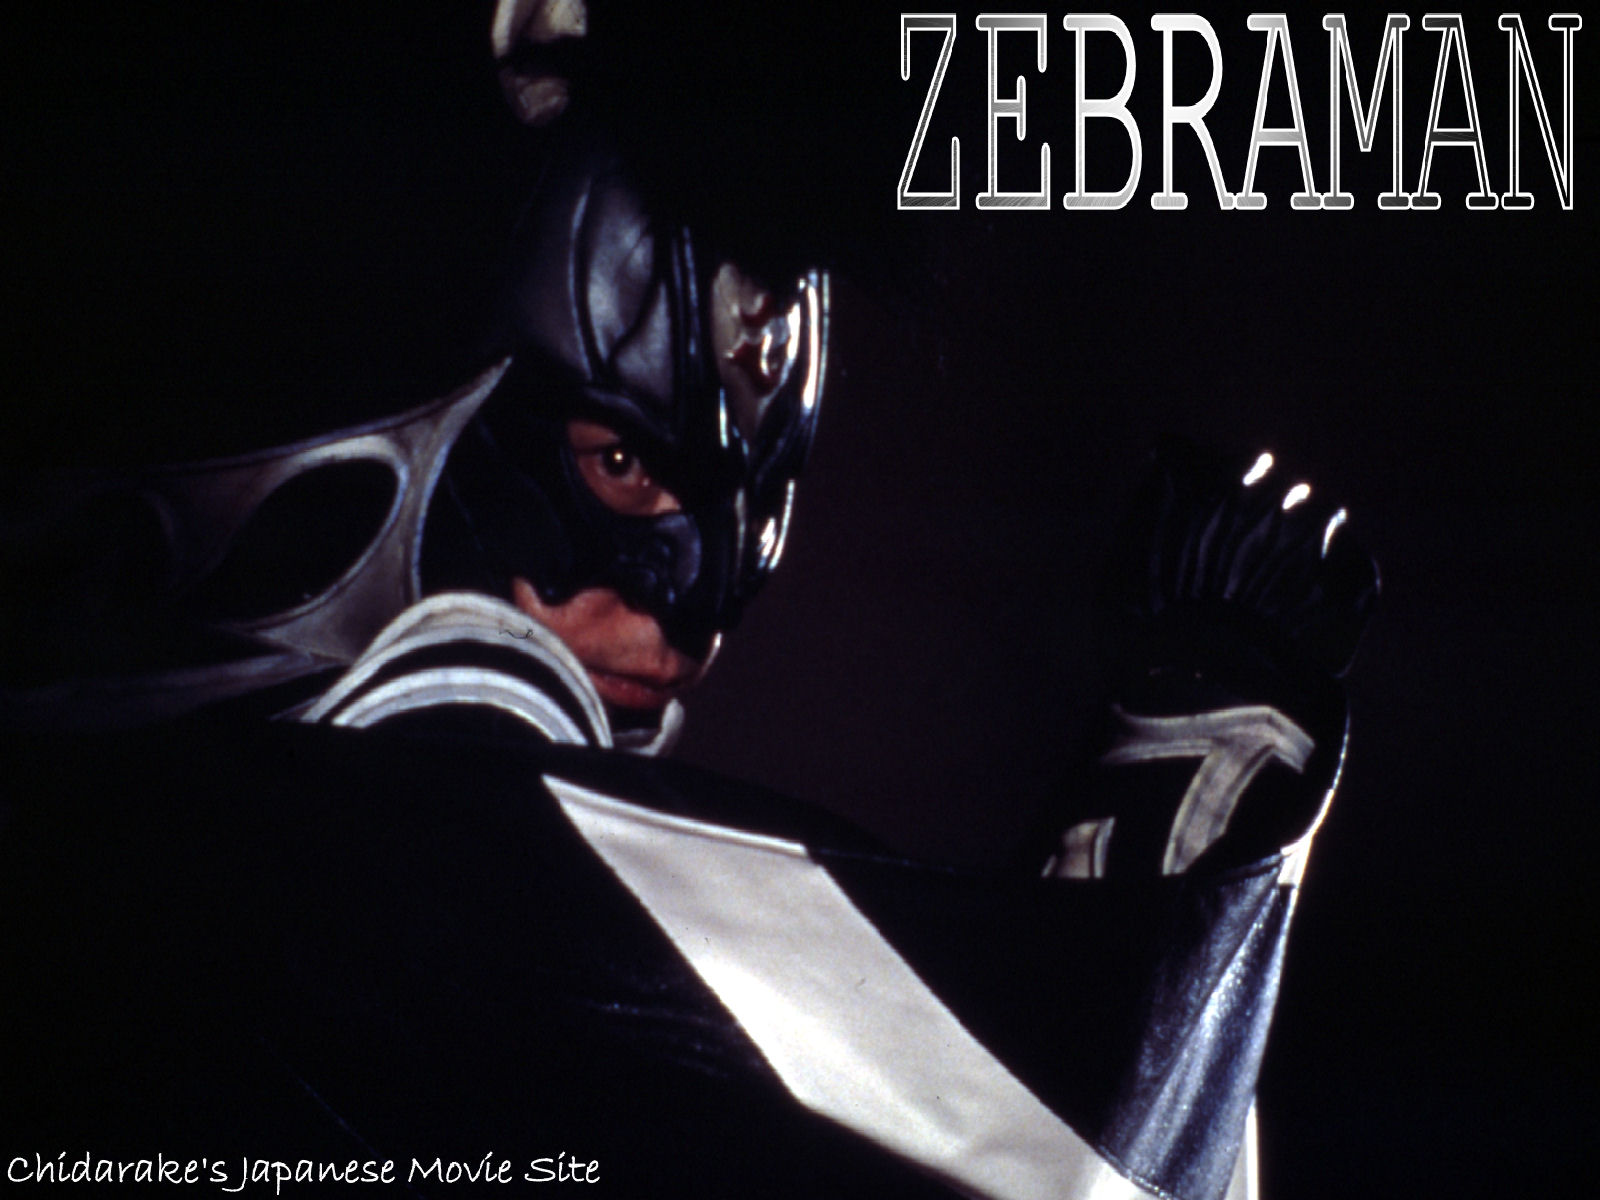 Zebraman 1